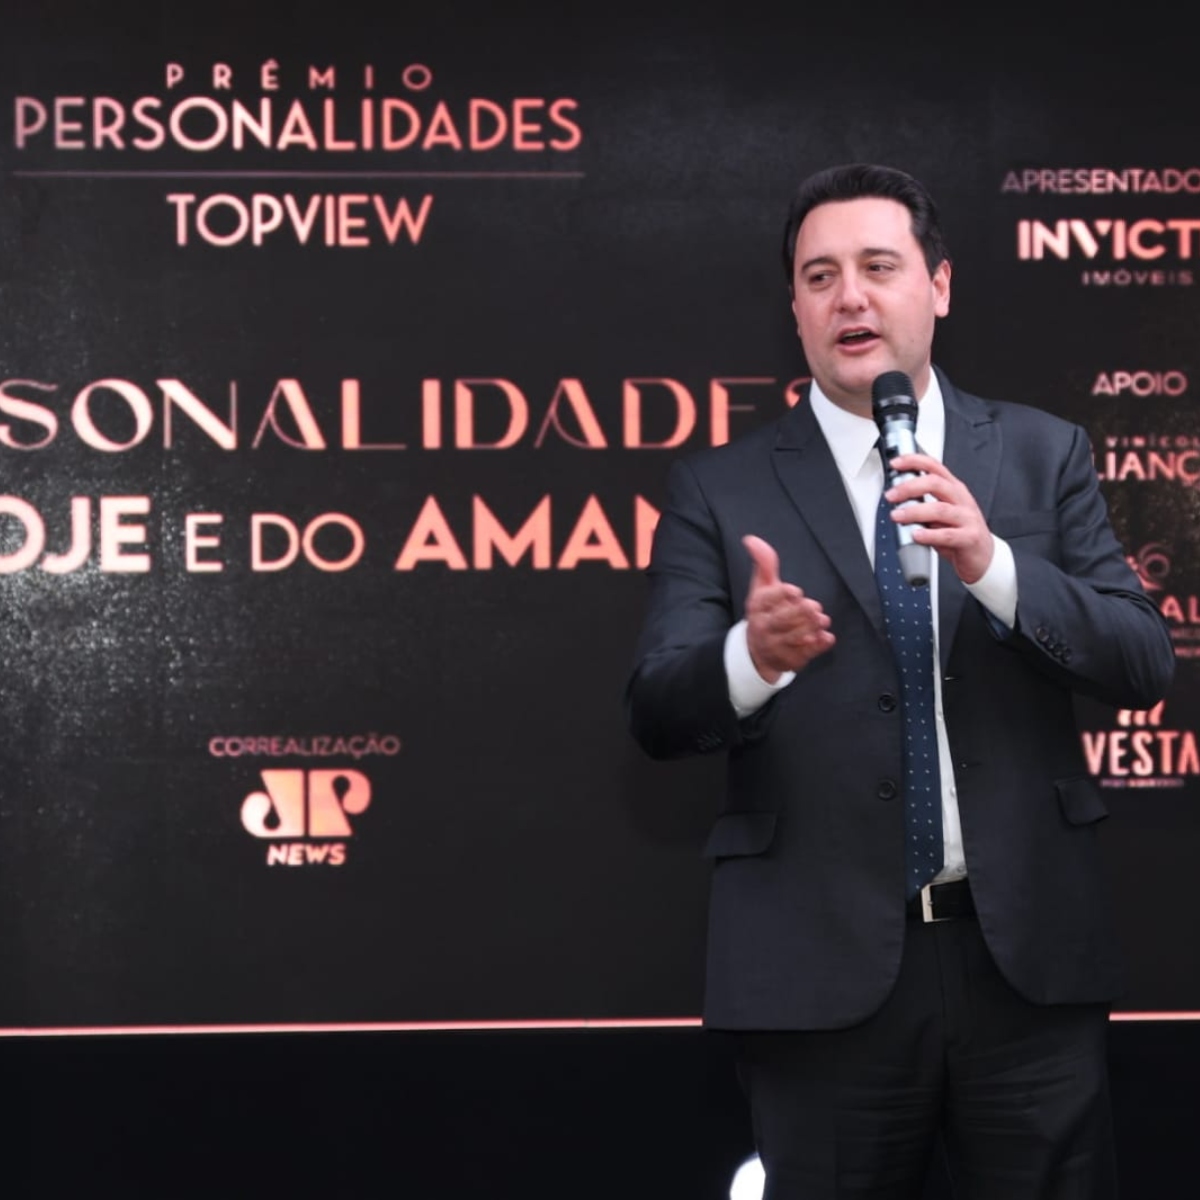  Ratinho Jr compartilha Prêmio Personalidades TOPVIEW com a população 